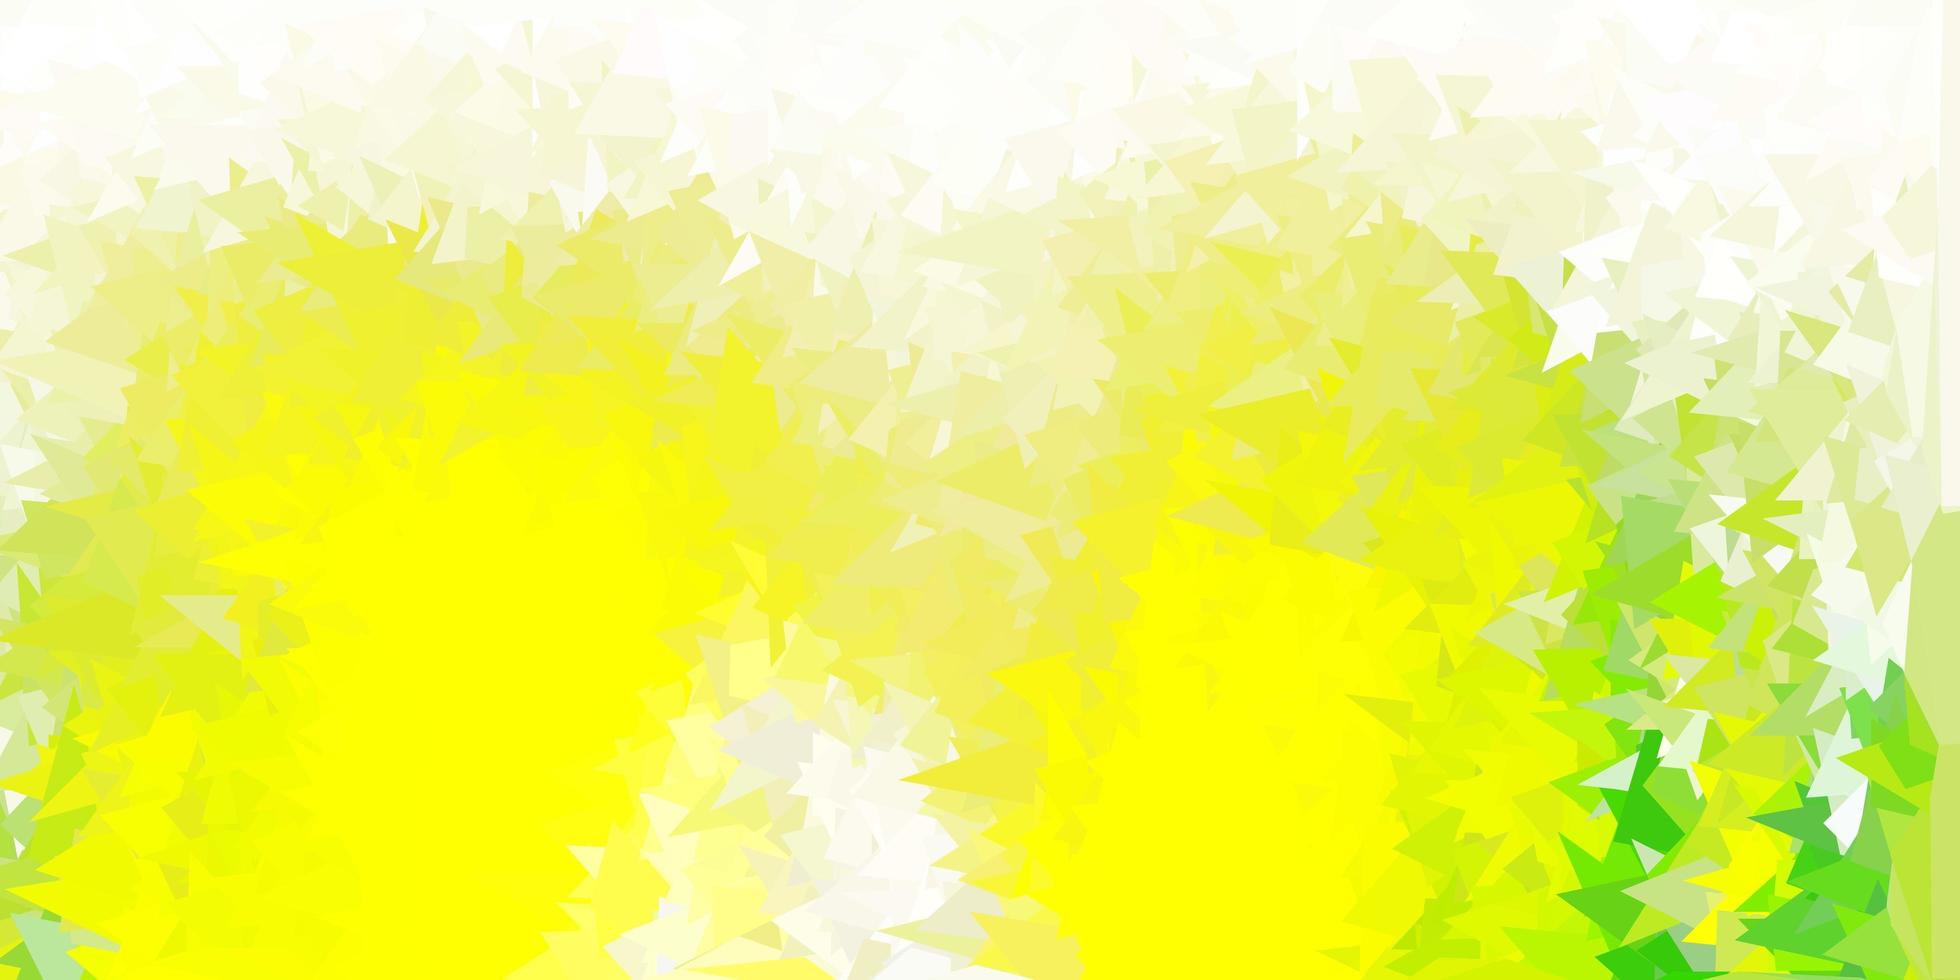 ljusgrön, gul vektor abstrakt triangelmall.